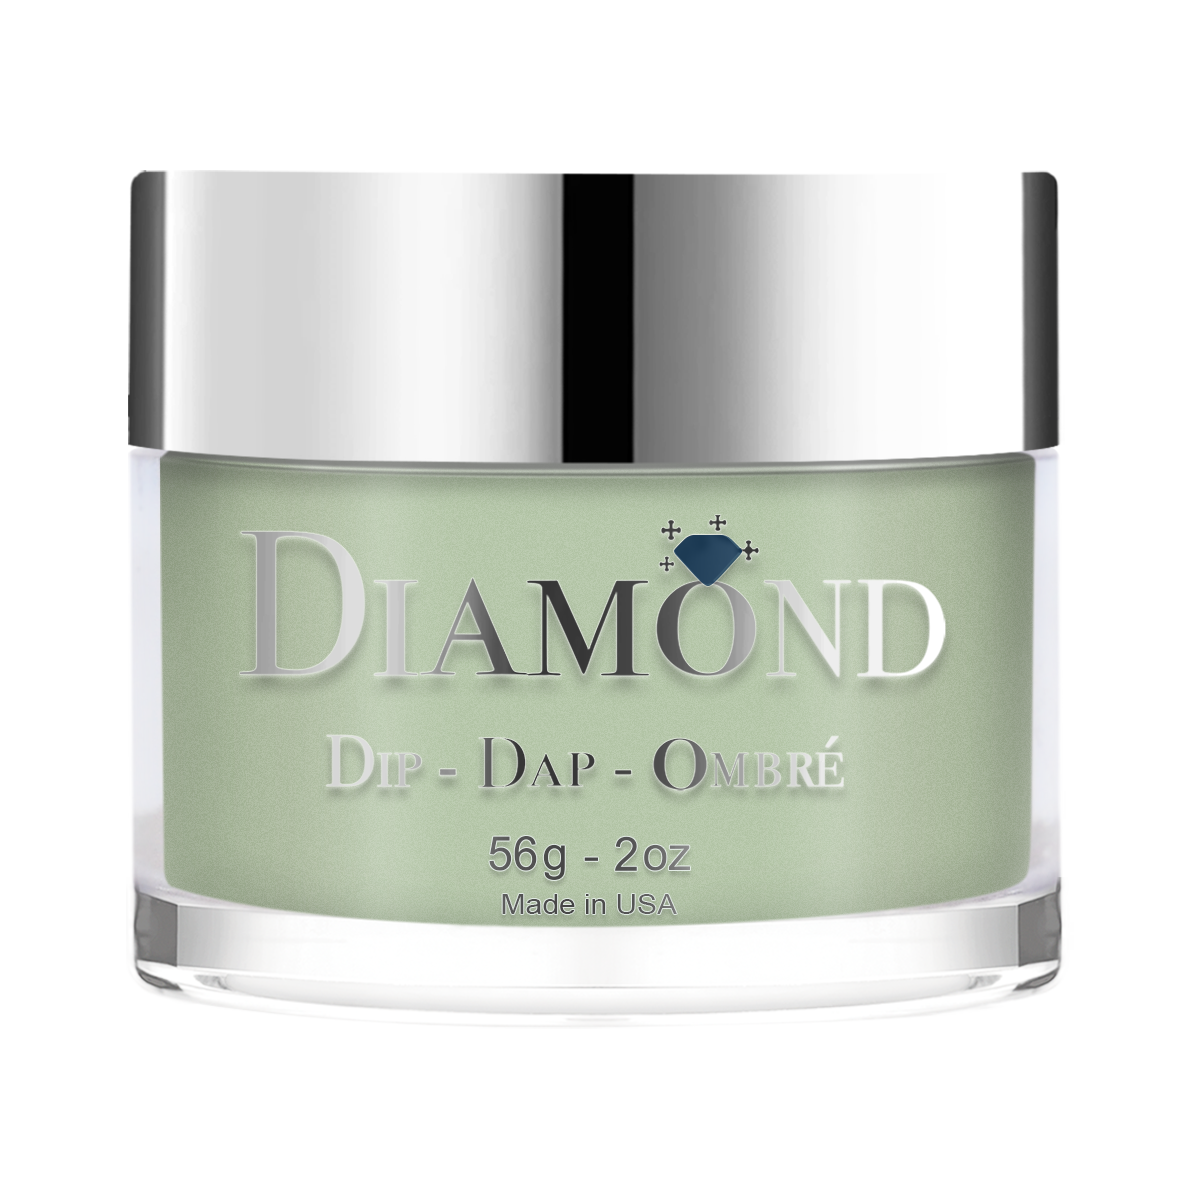 Diamond Dip & Dap Ombre Powder - 072